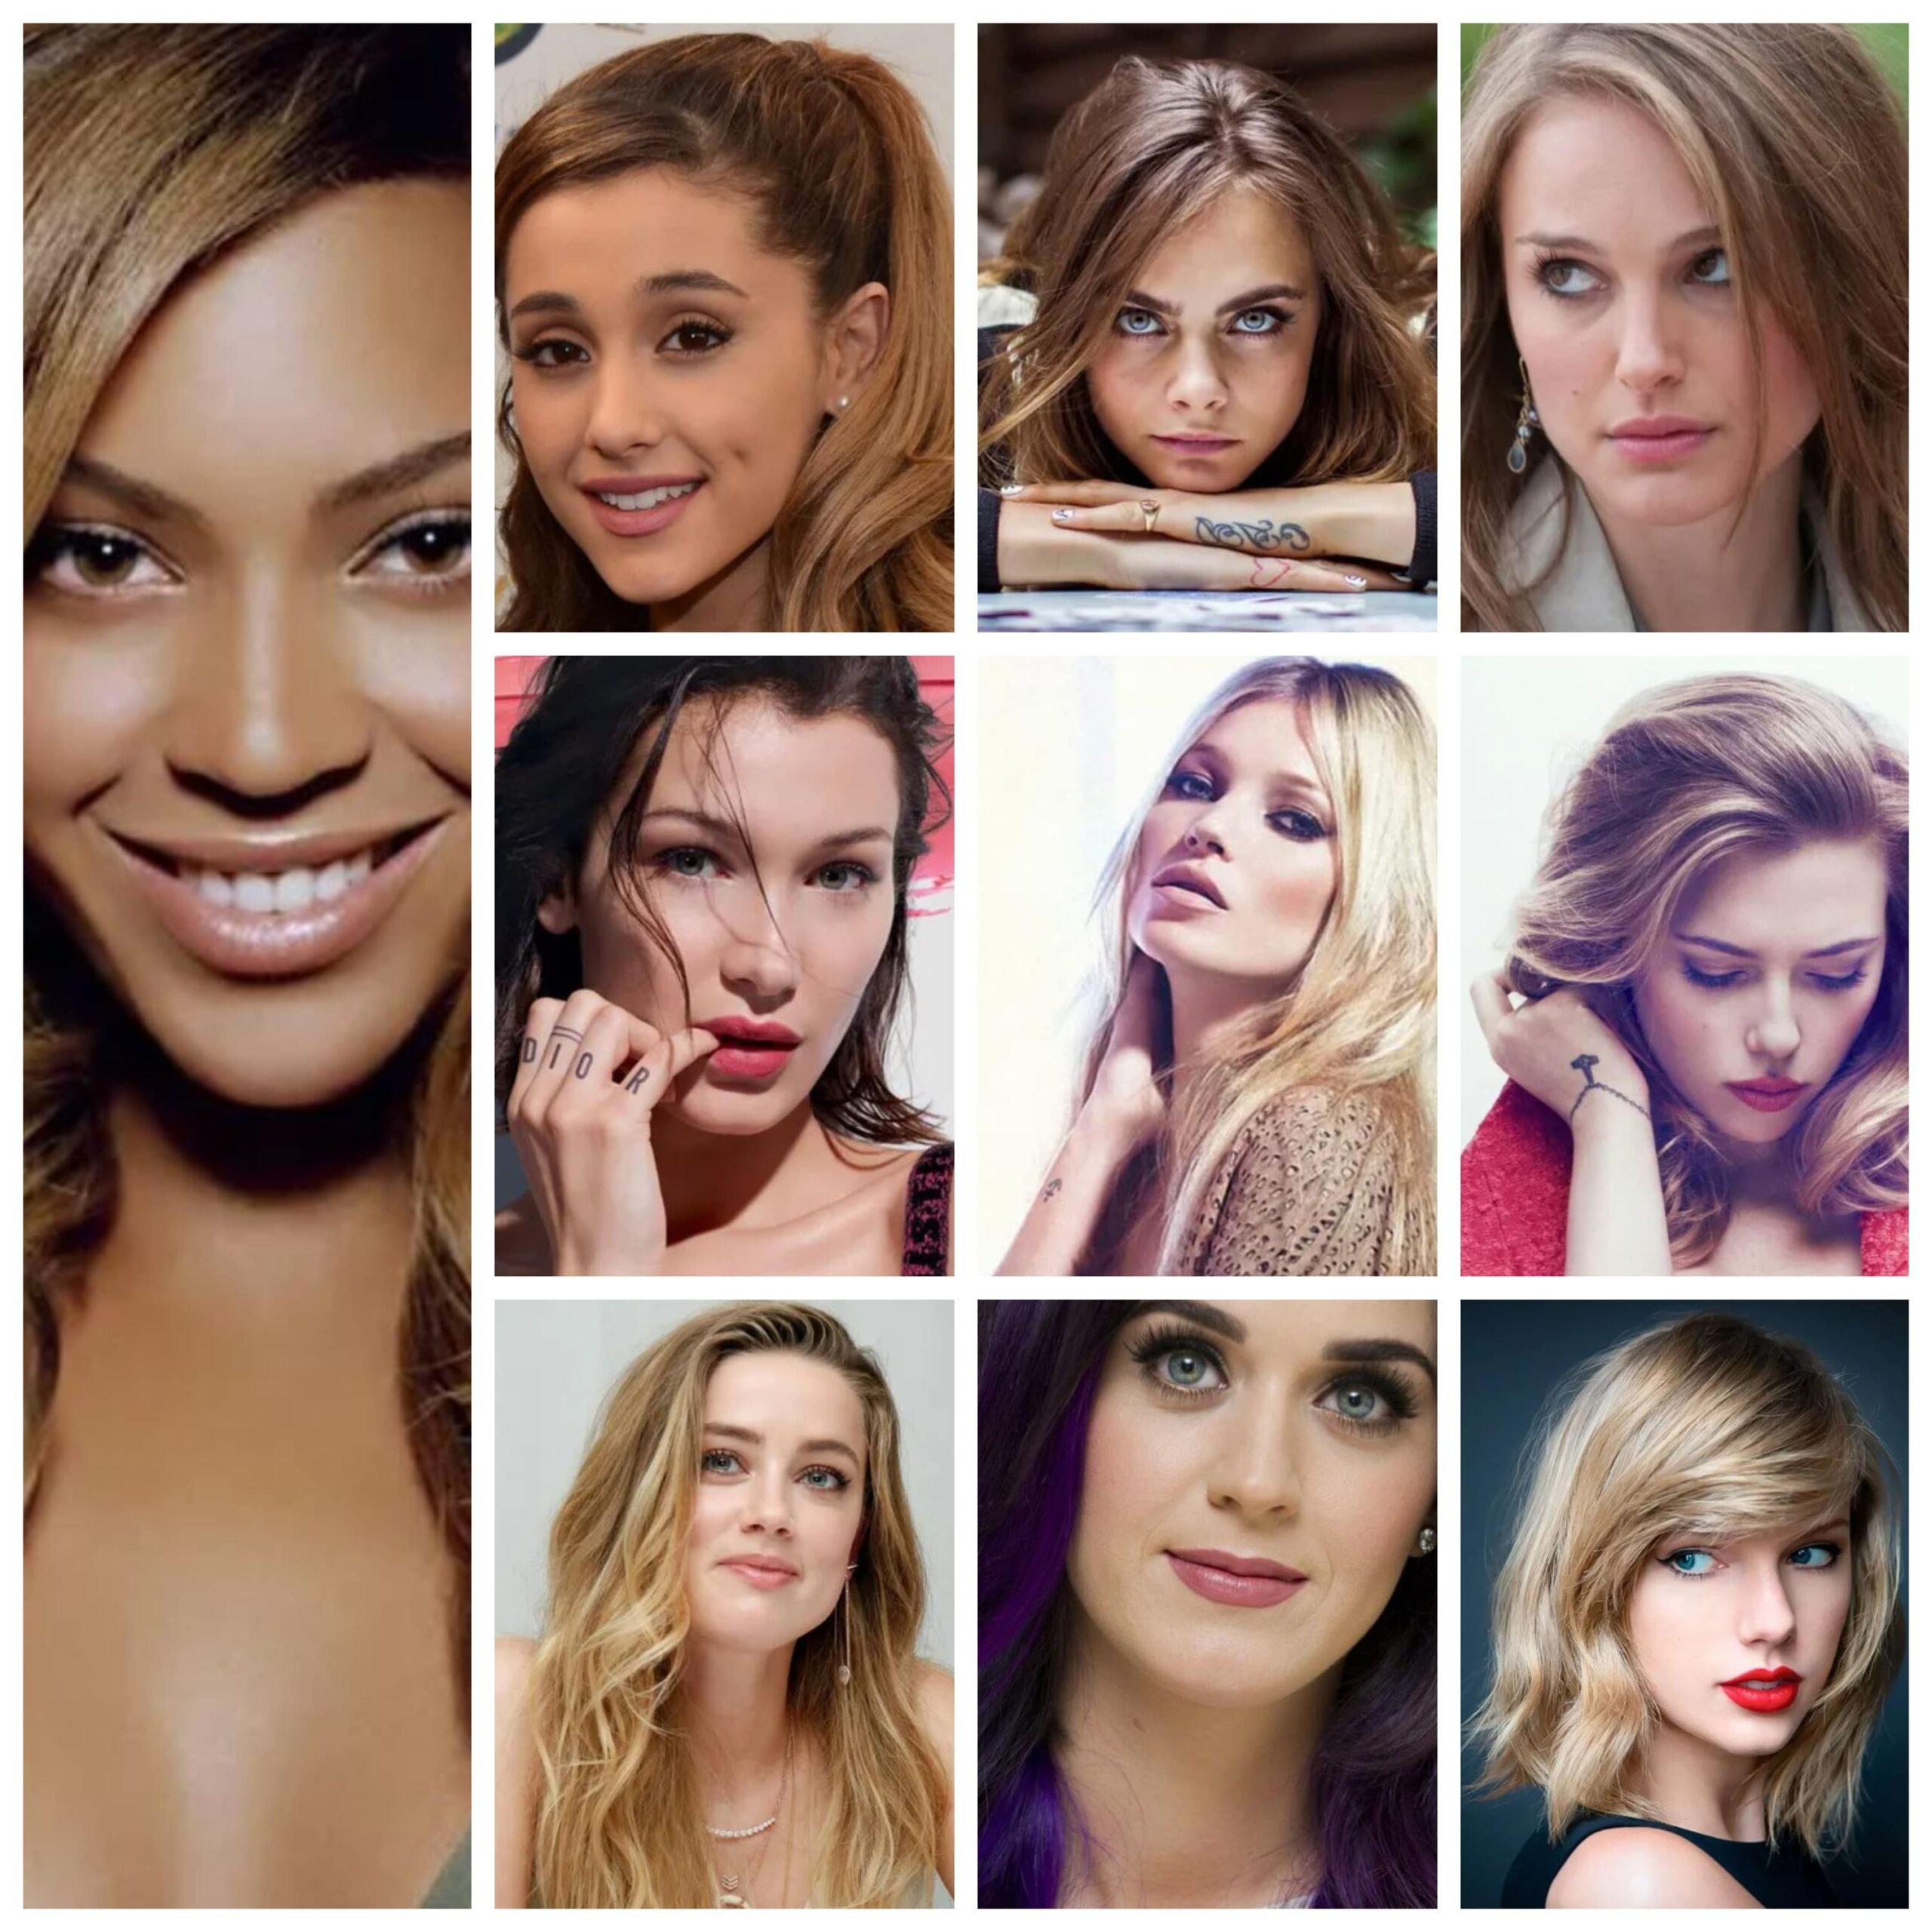 Top 10 Most Beautiful Women